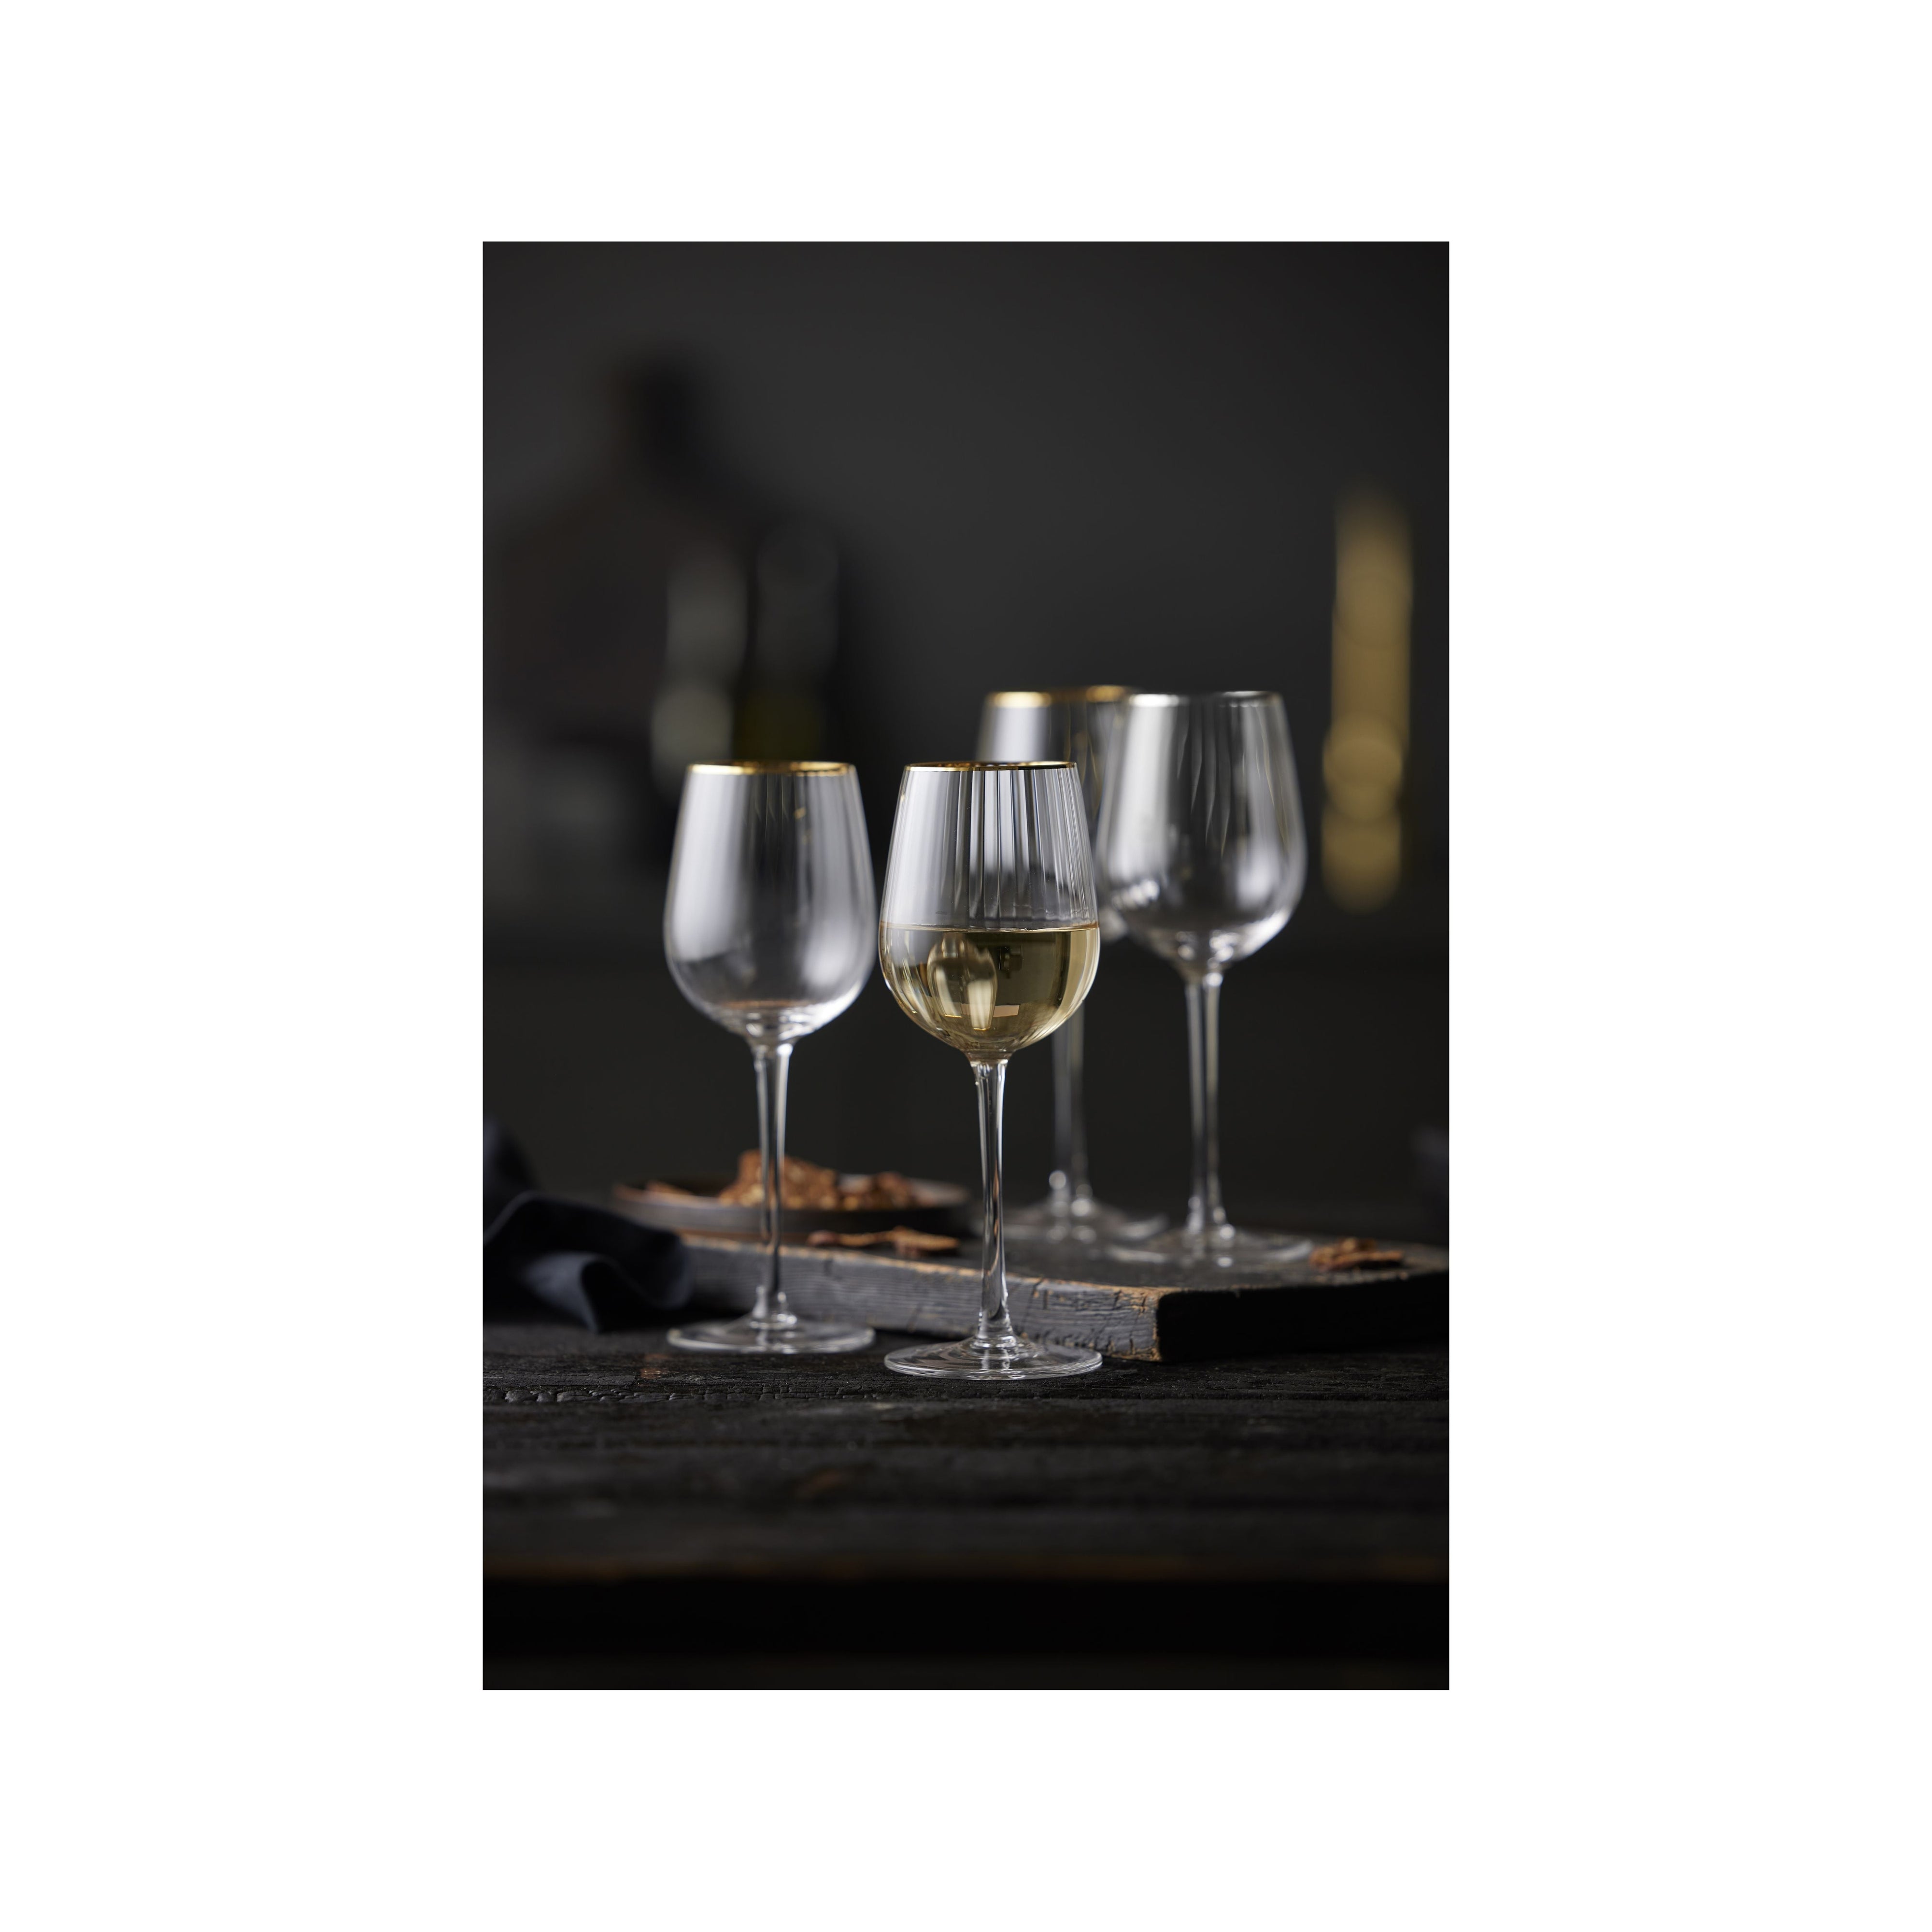 Lyngby Glas Verre de vin blanc de Palermo Gold 30 CL 4 PCS.